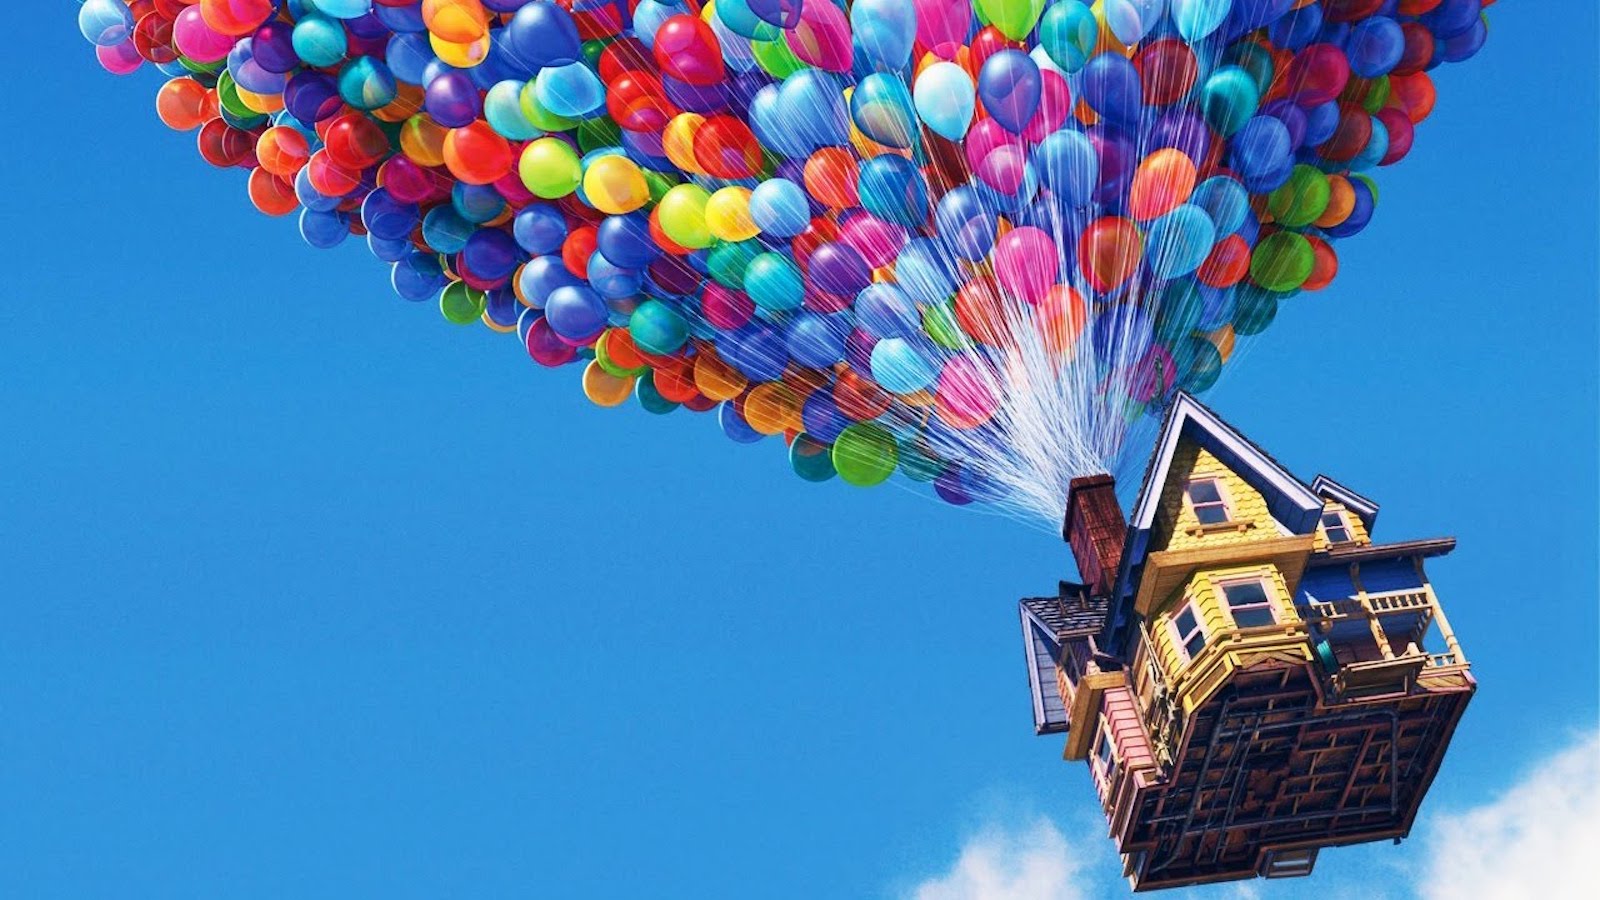 Up, Airbnb ha realizzato la vera casa fluttuante del film Pixar, ma c'è un problema